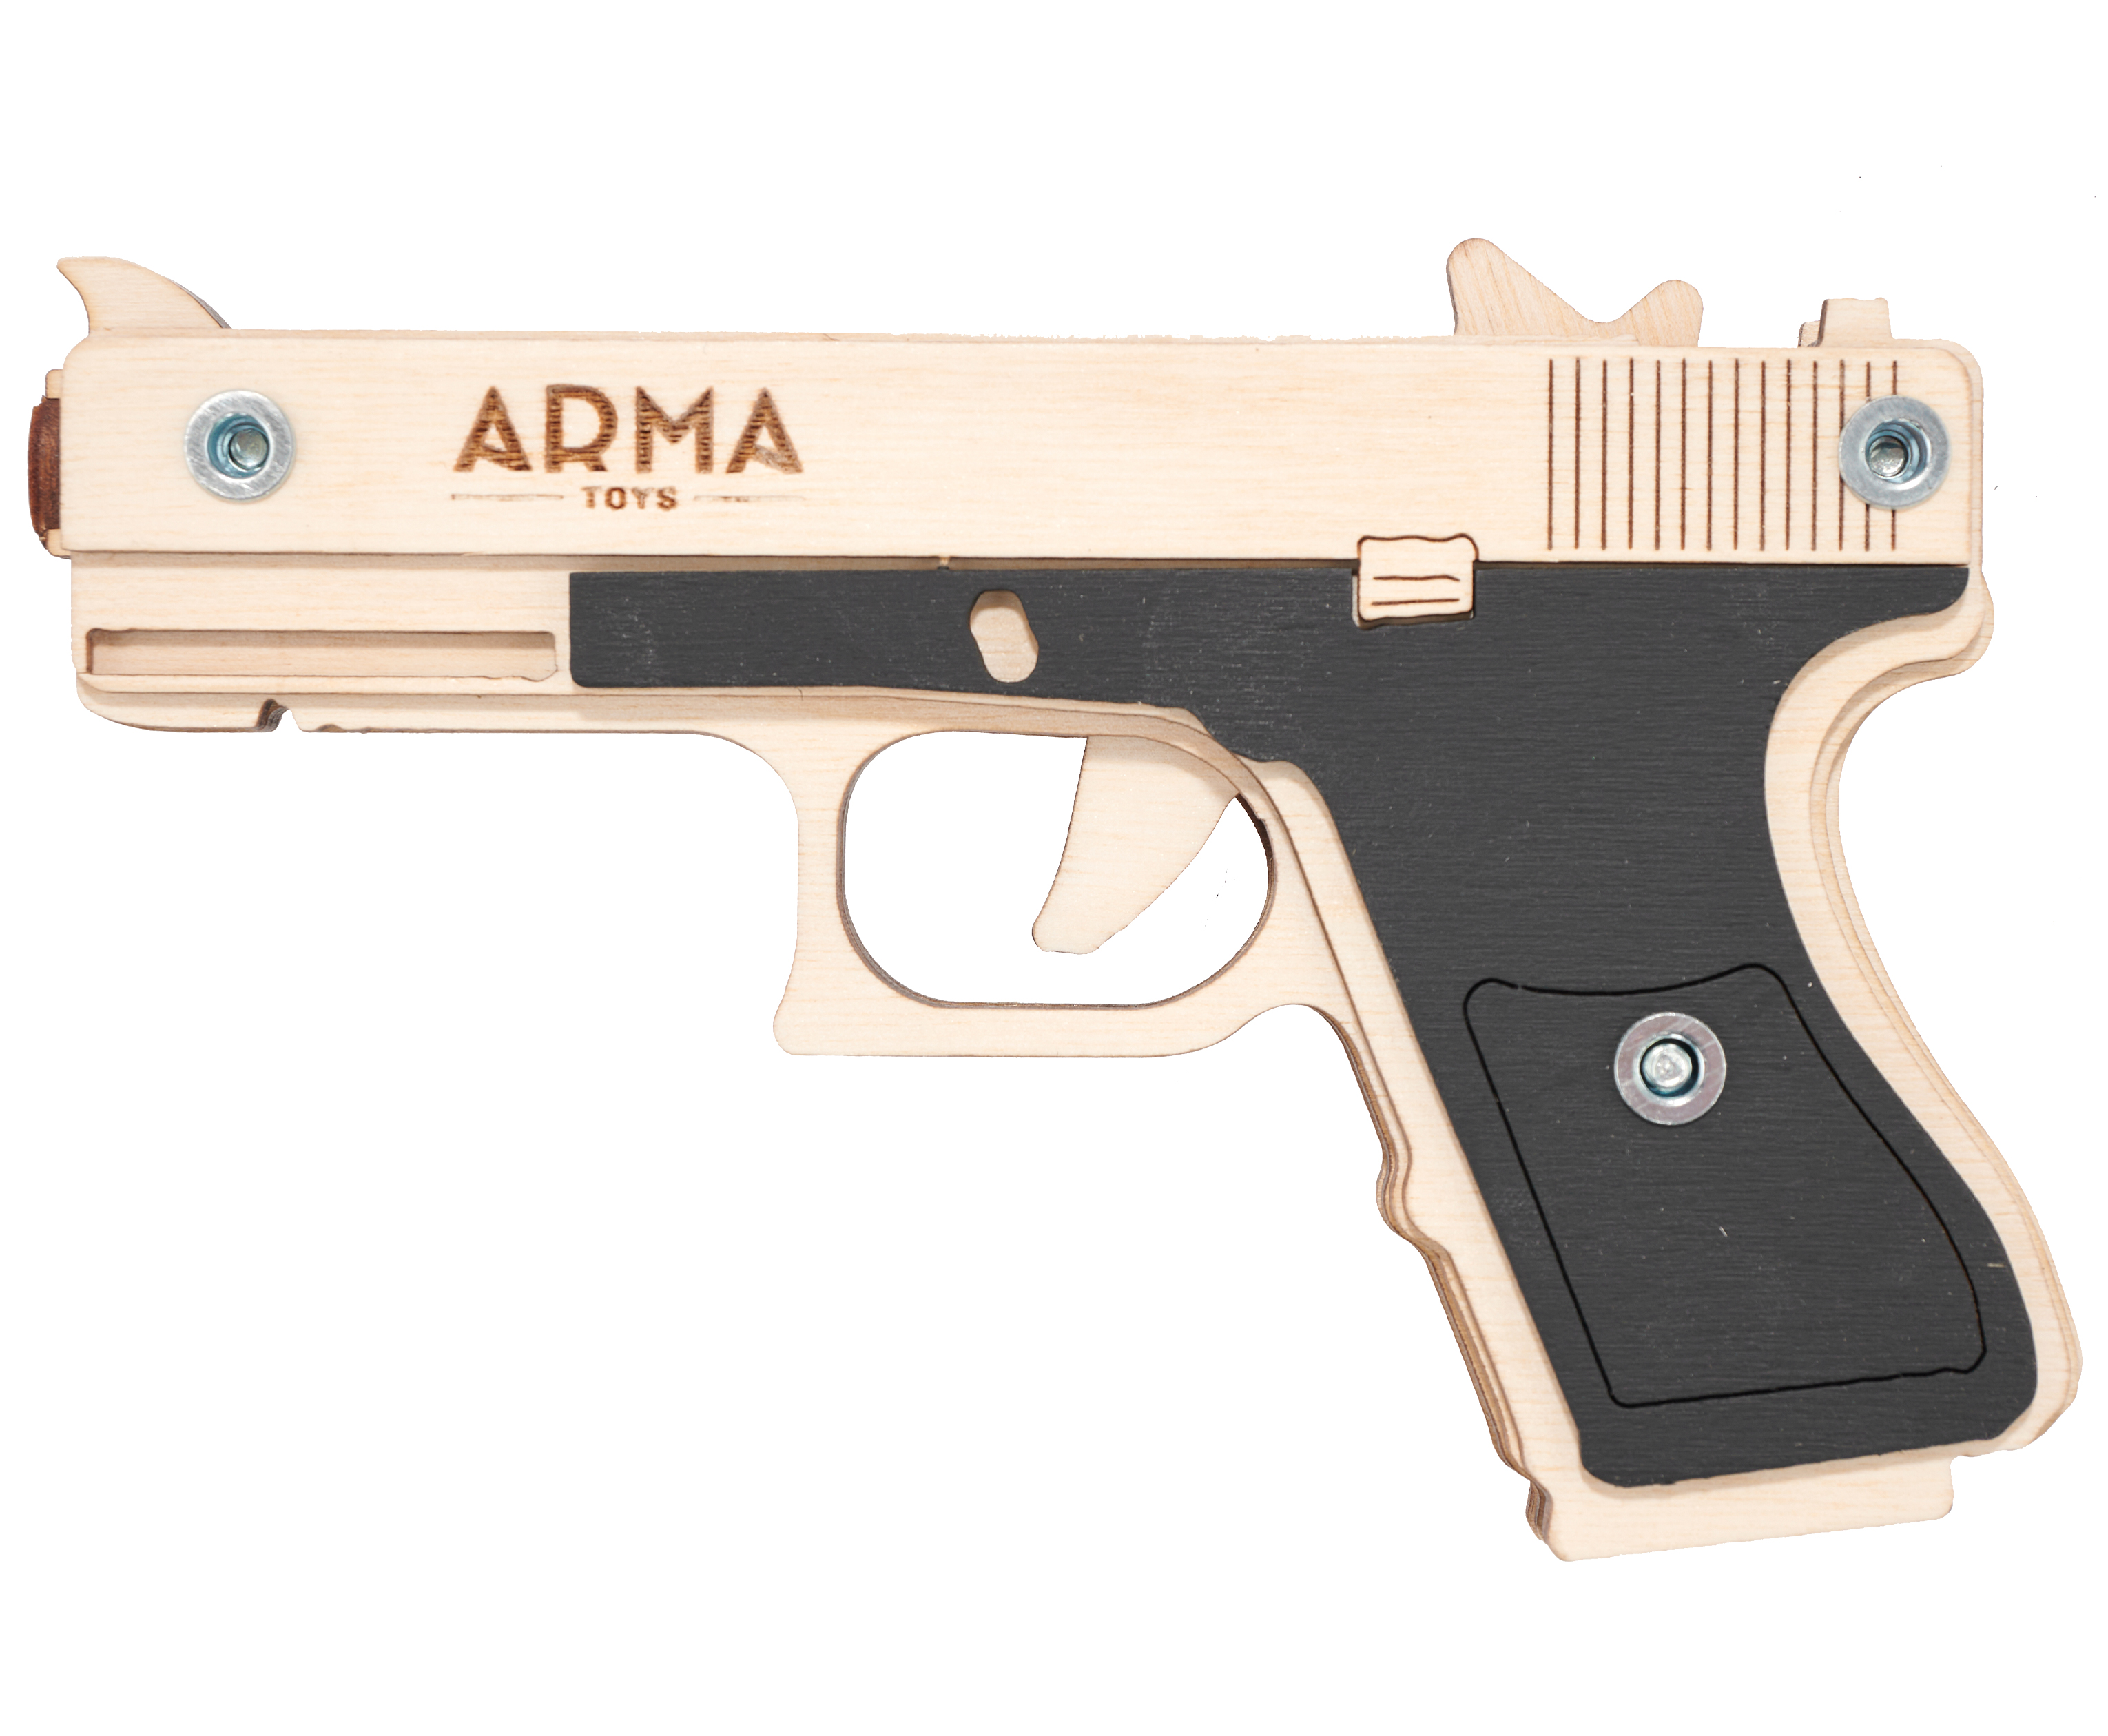 Резинкострел игрушечный Arma toys пистолет Glock Light макет, Глок 26, AT027, окрашенный резинкострел arma toys автомат ак 47 макет калашников at006color